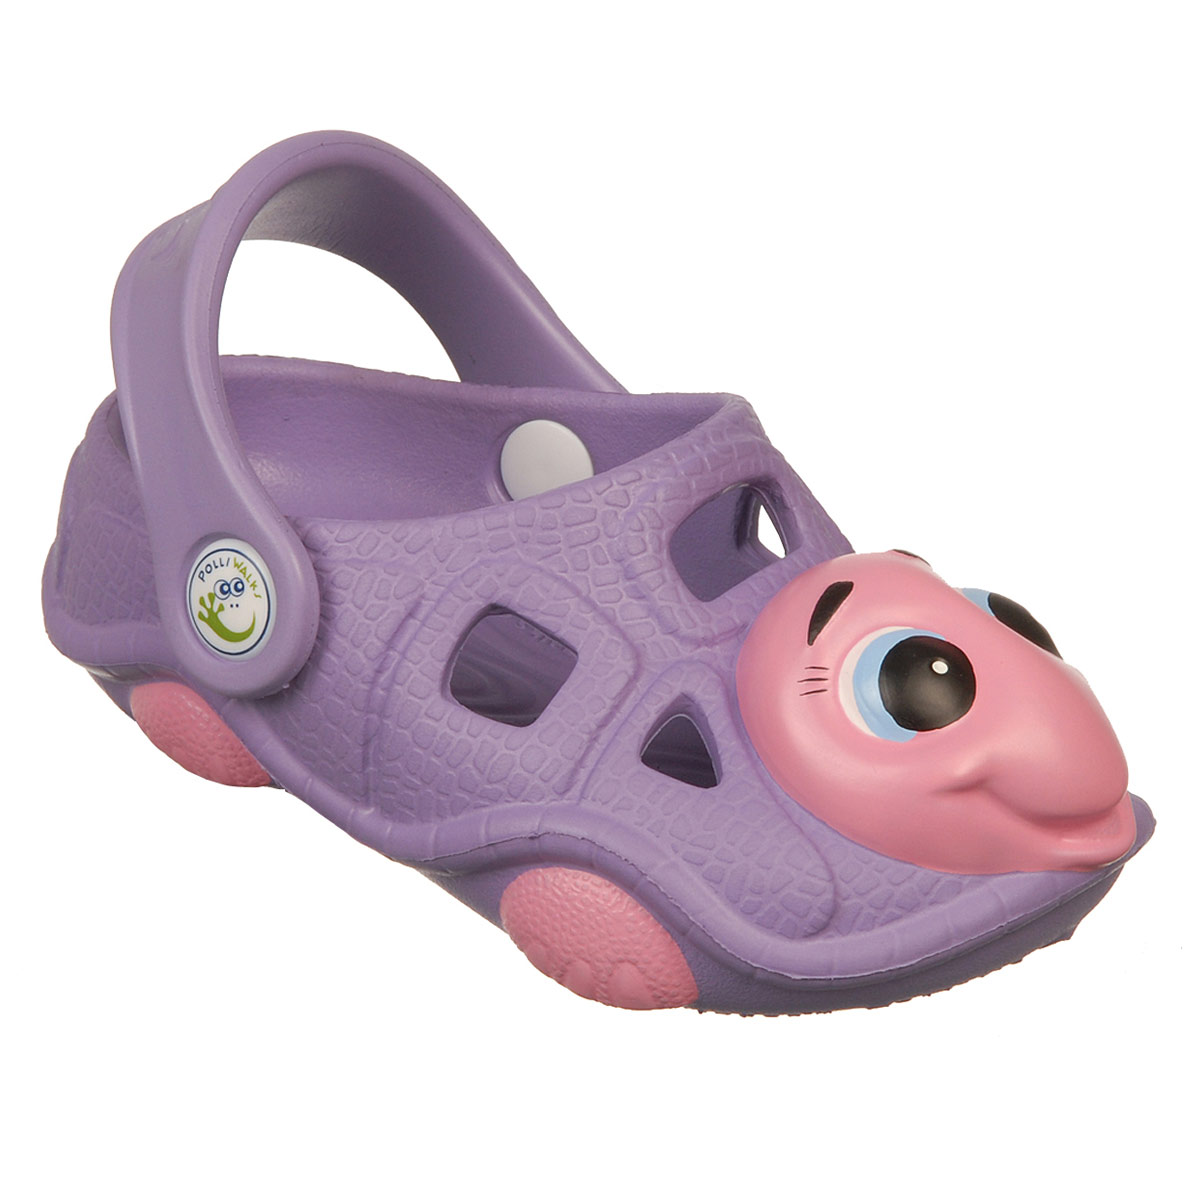 Polliwalks : รองเท้าเด็ก Tory  the Turtle  Purple # 12 